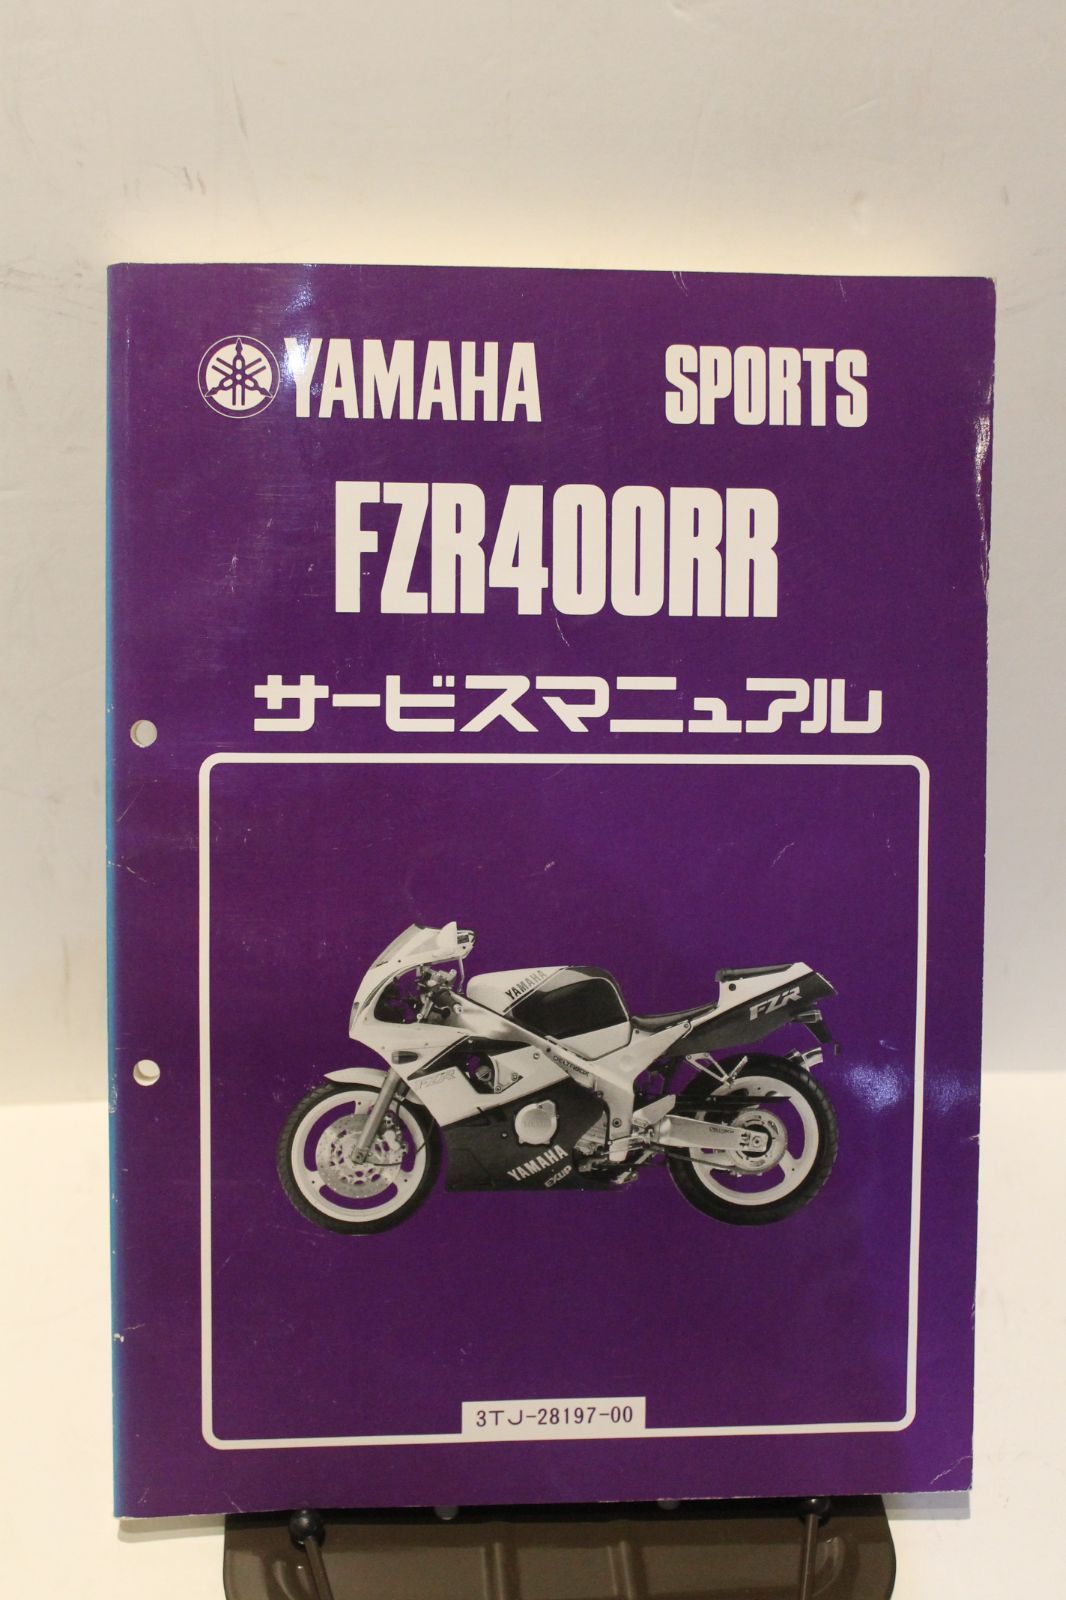 YAMAHA FZR400RR SP サービスマニュアル ヤマハ